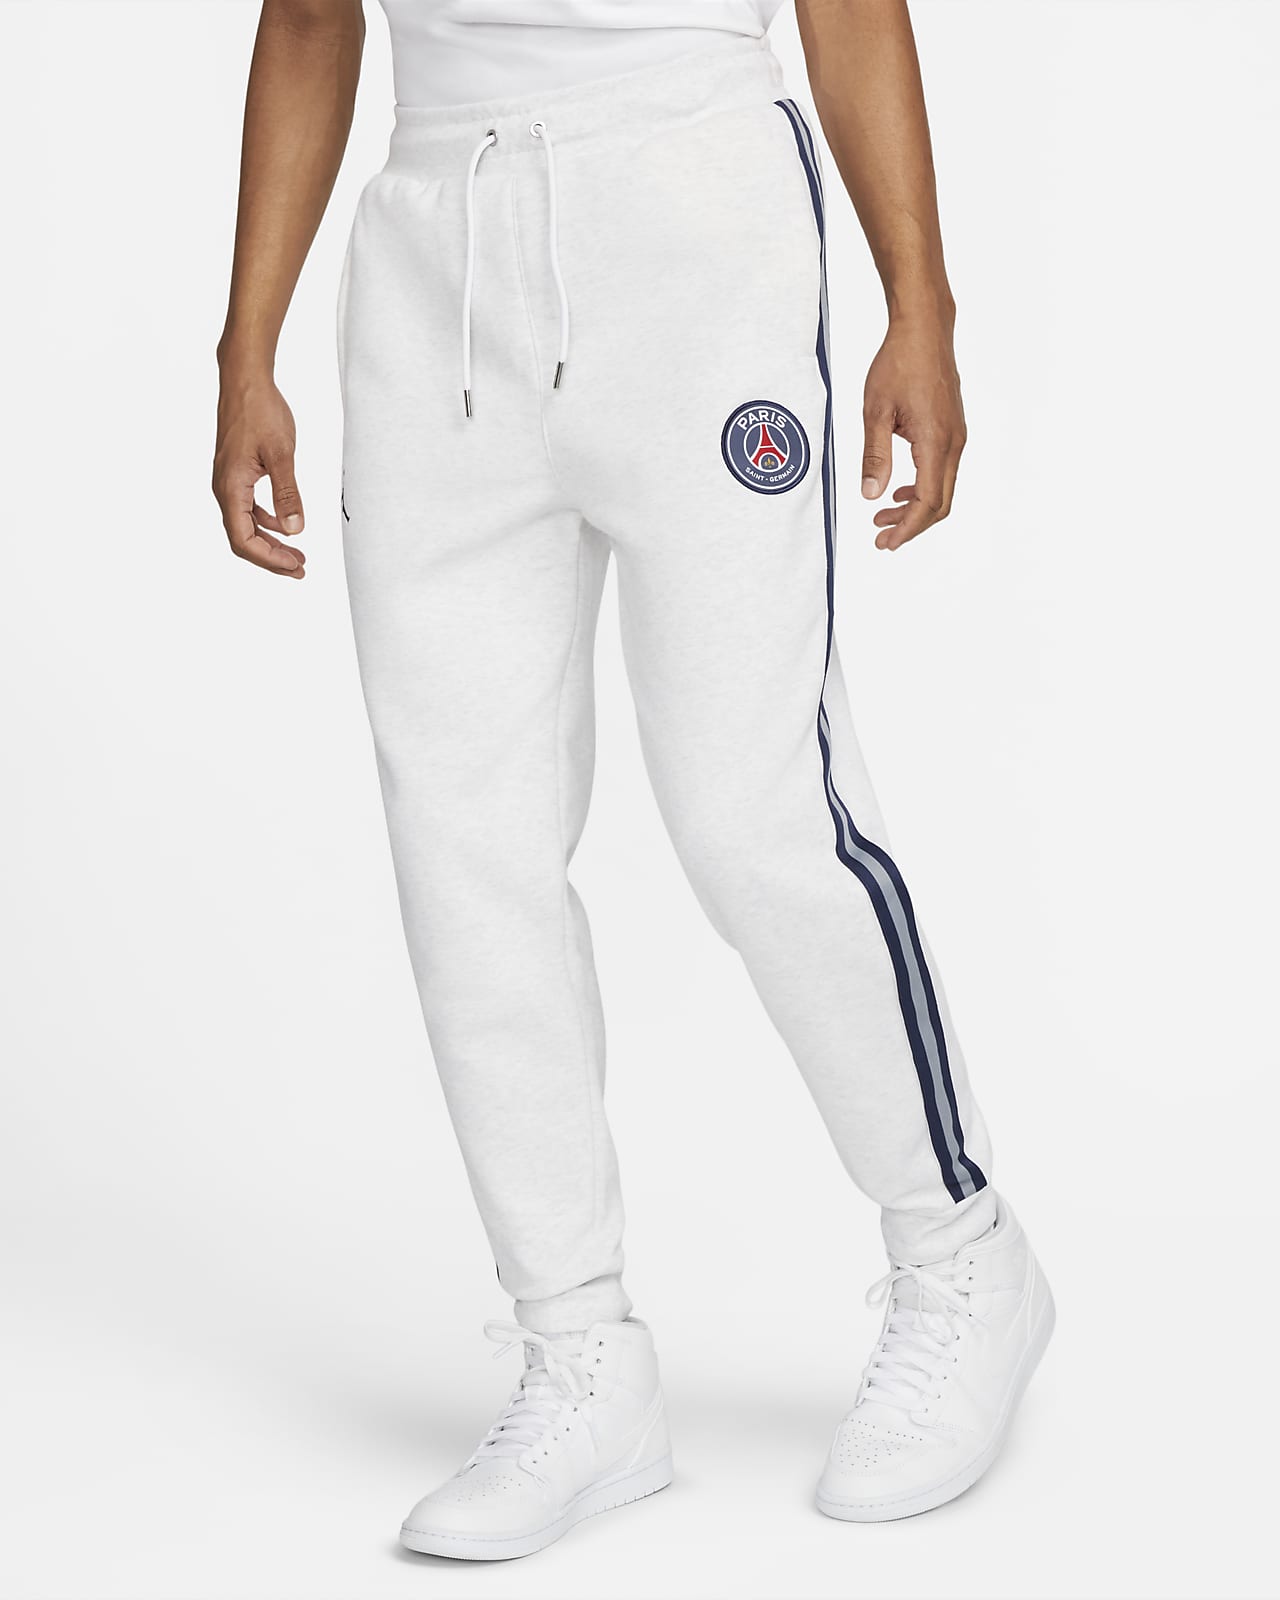 Pants tejido para hombre Paris Nike.com